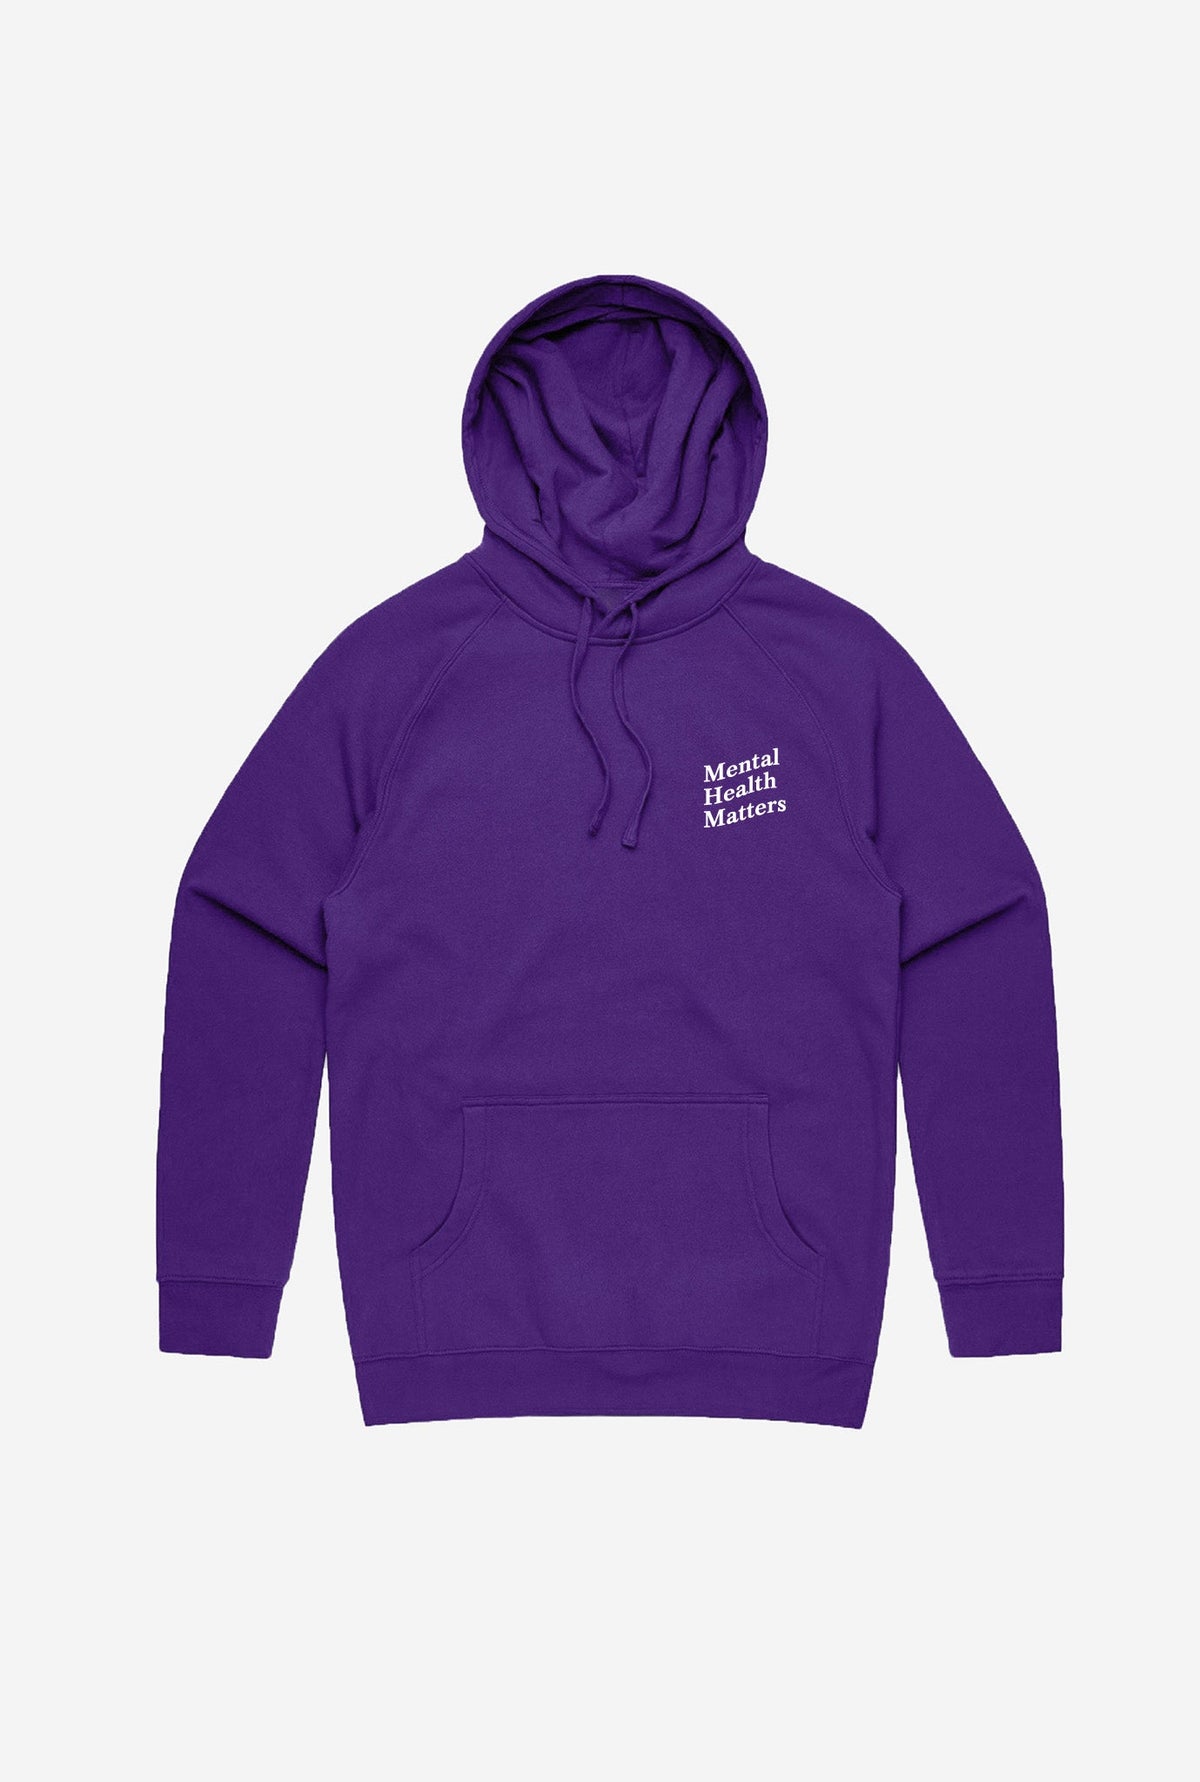 Mental Health Matters Hoodie - Purple